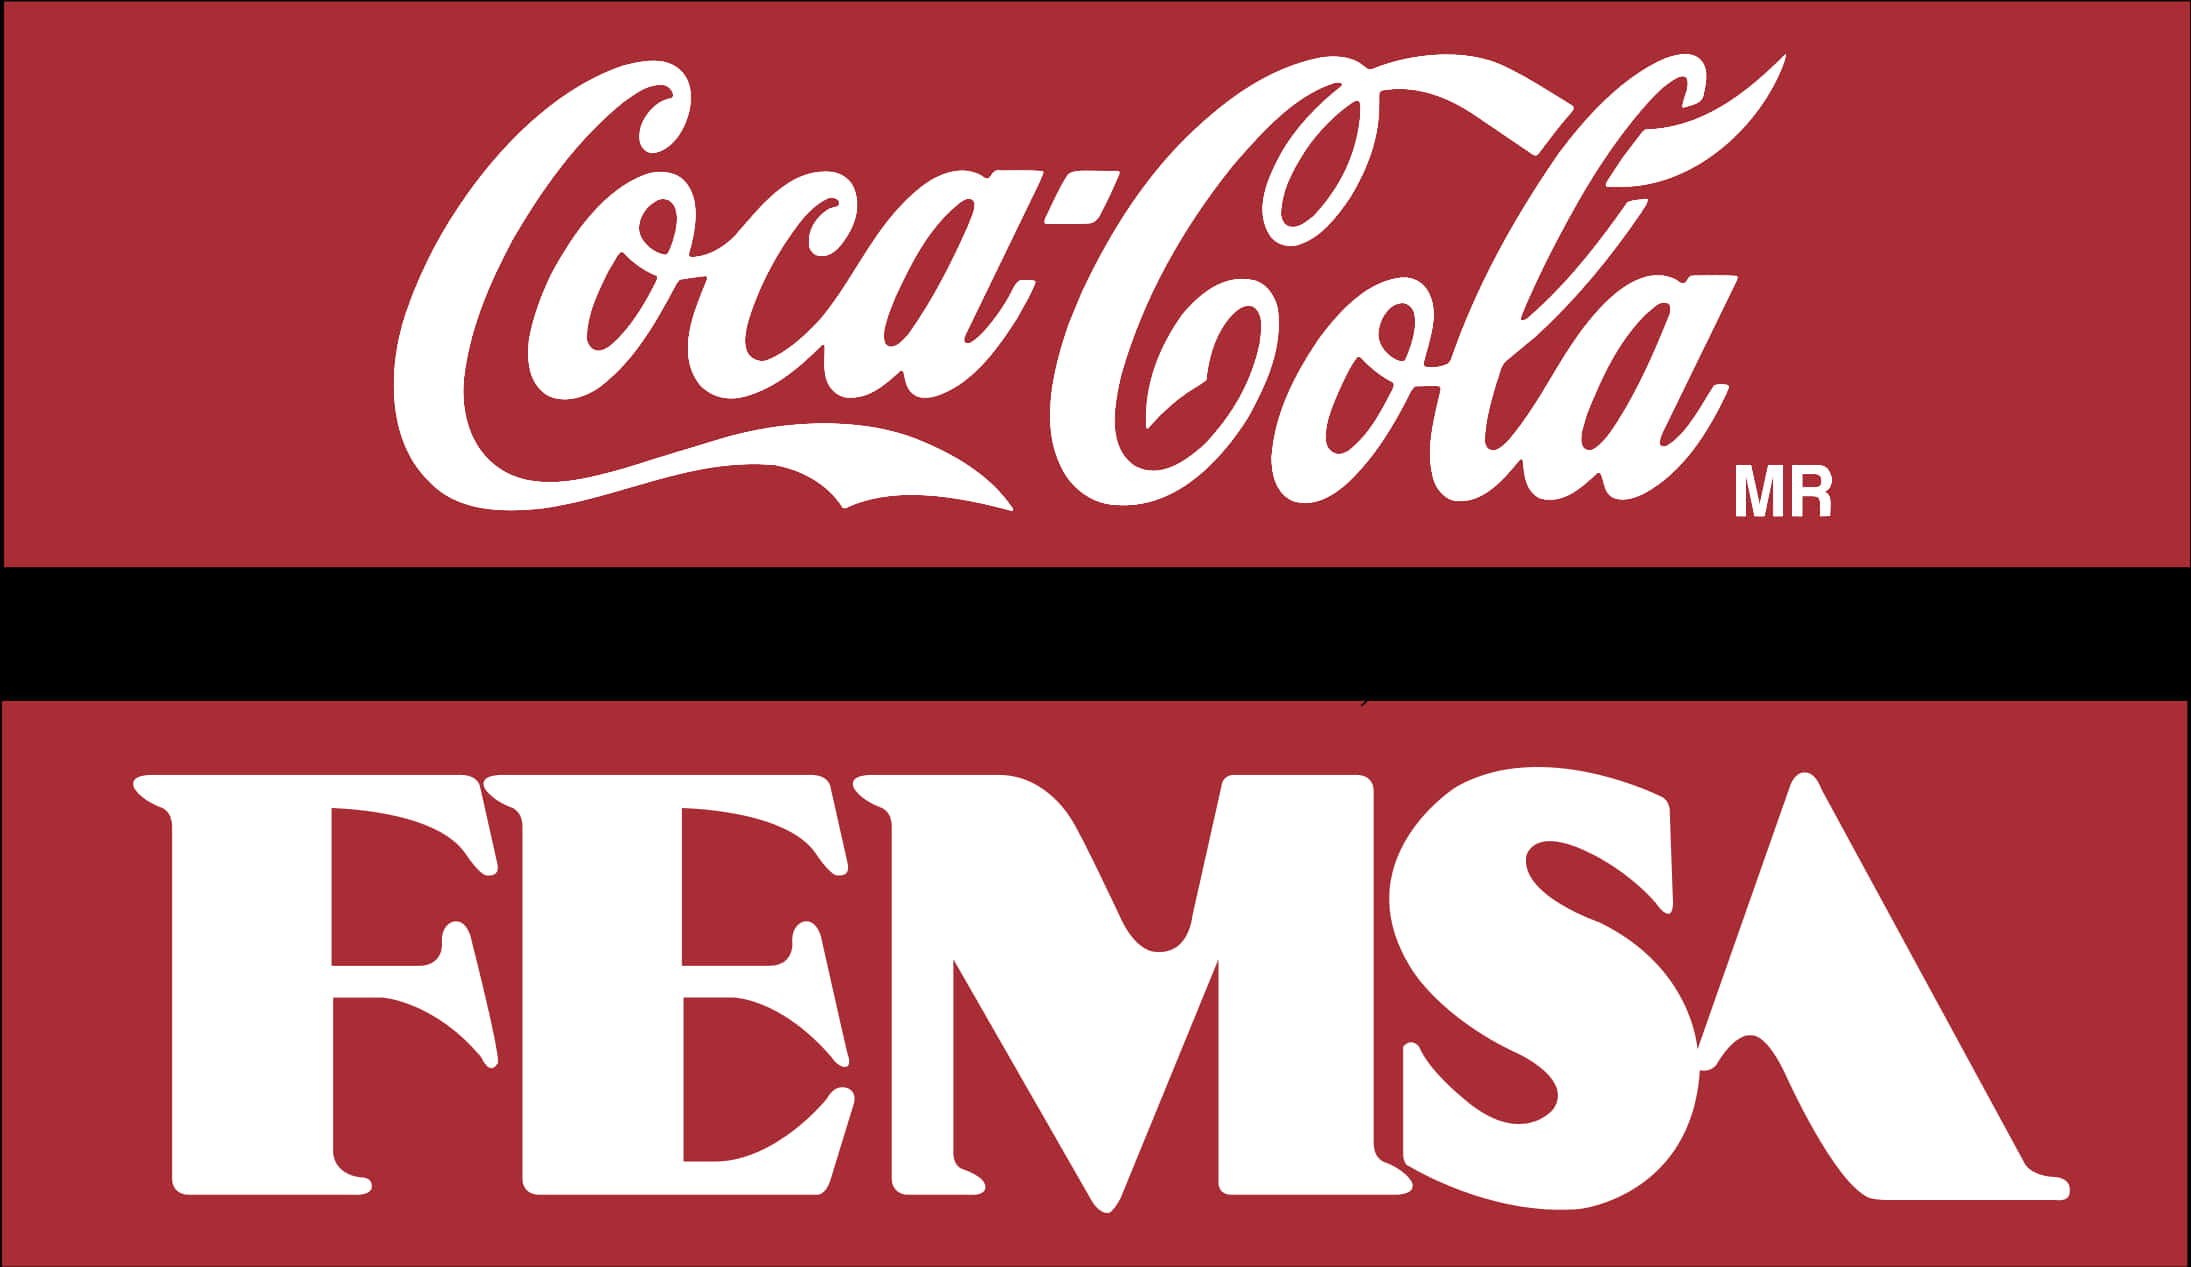 Coca Colaand F E M S A Logos PNG